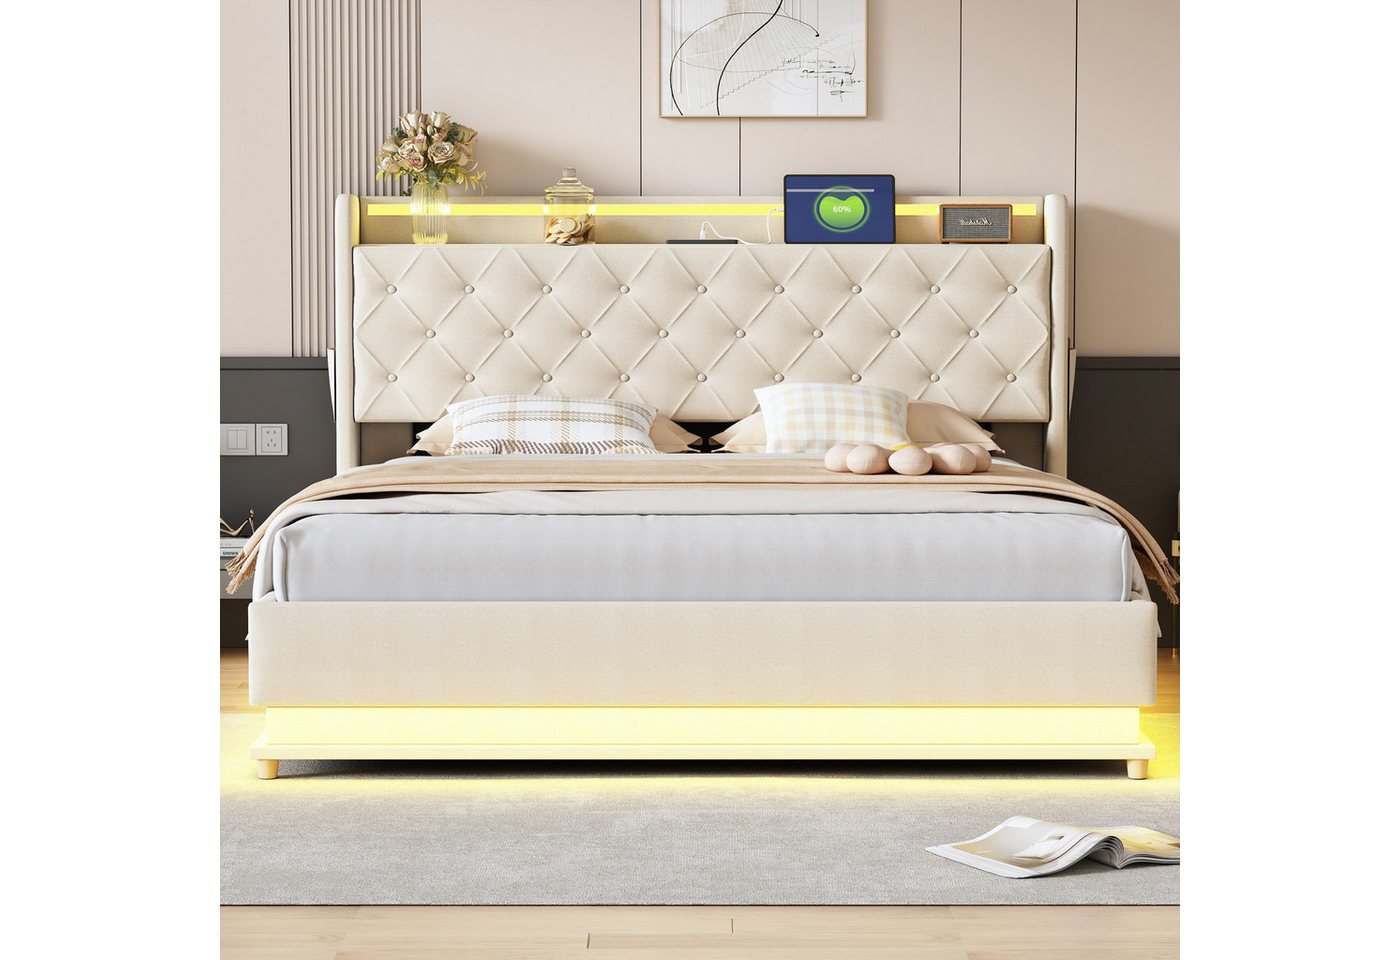 IDEASY Polsterbett Doppelbett, 160 x 200 cm, beige/grau, (Hydraulischer Lag günstig online kaufen